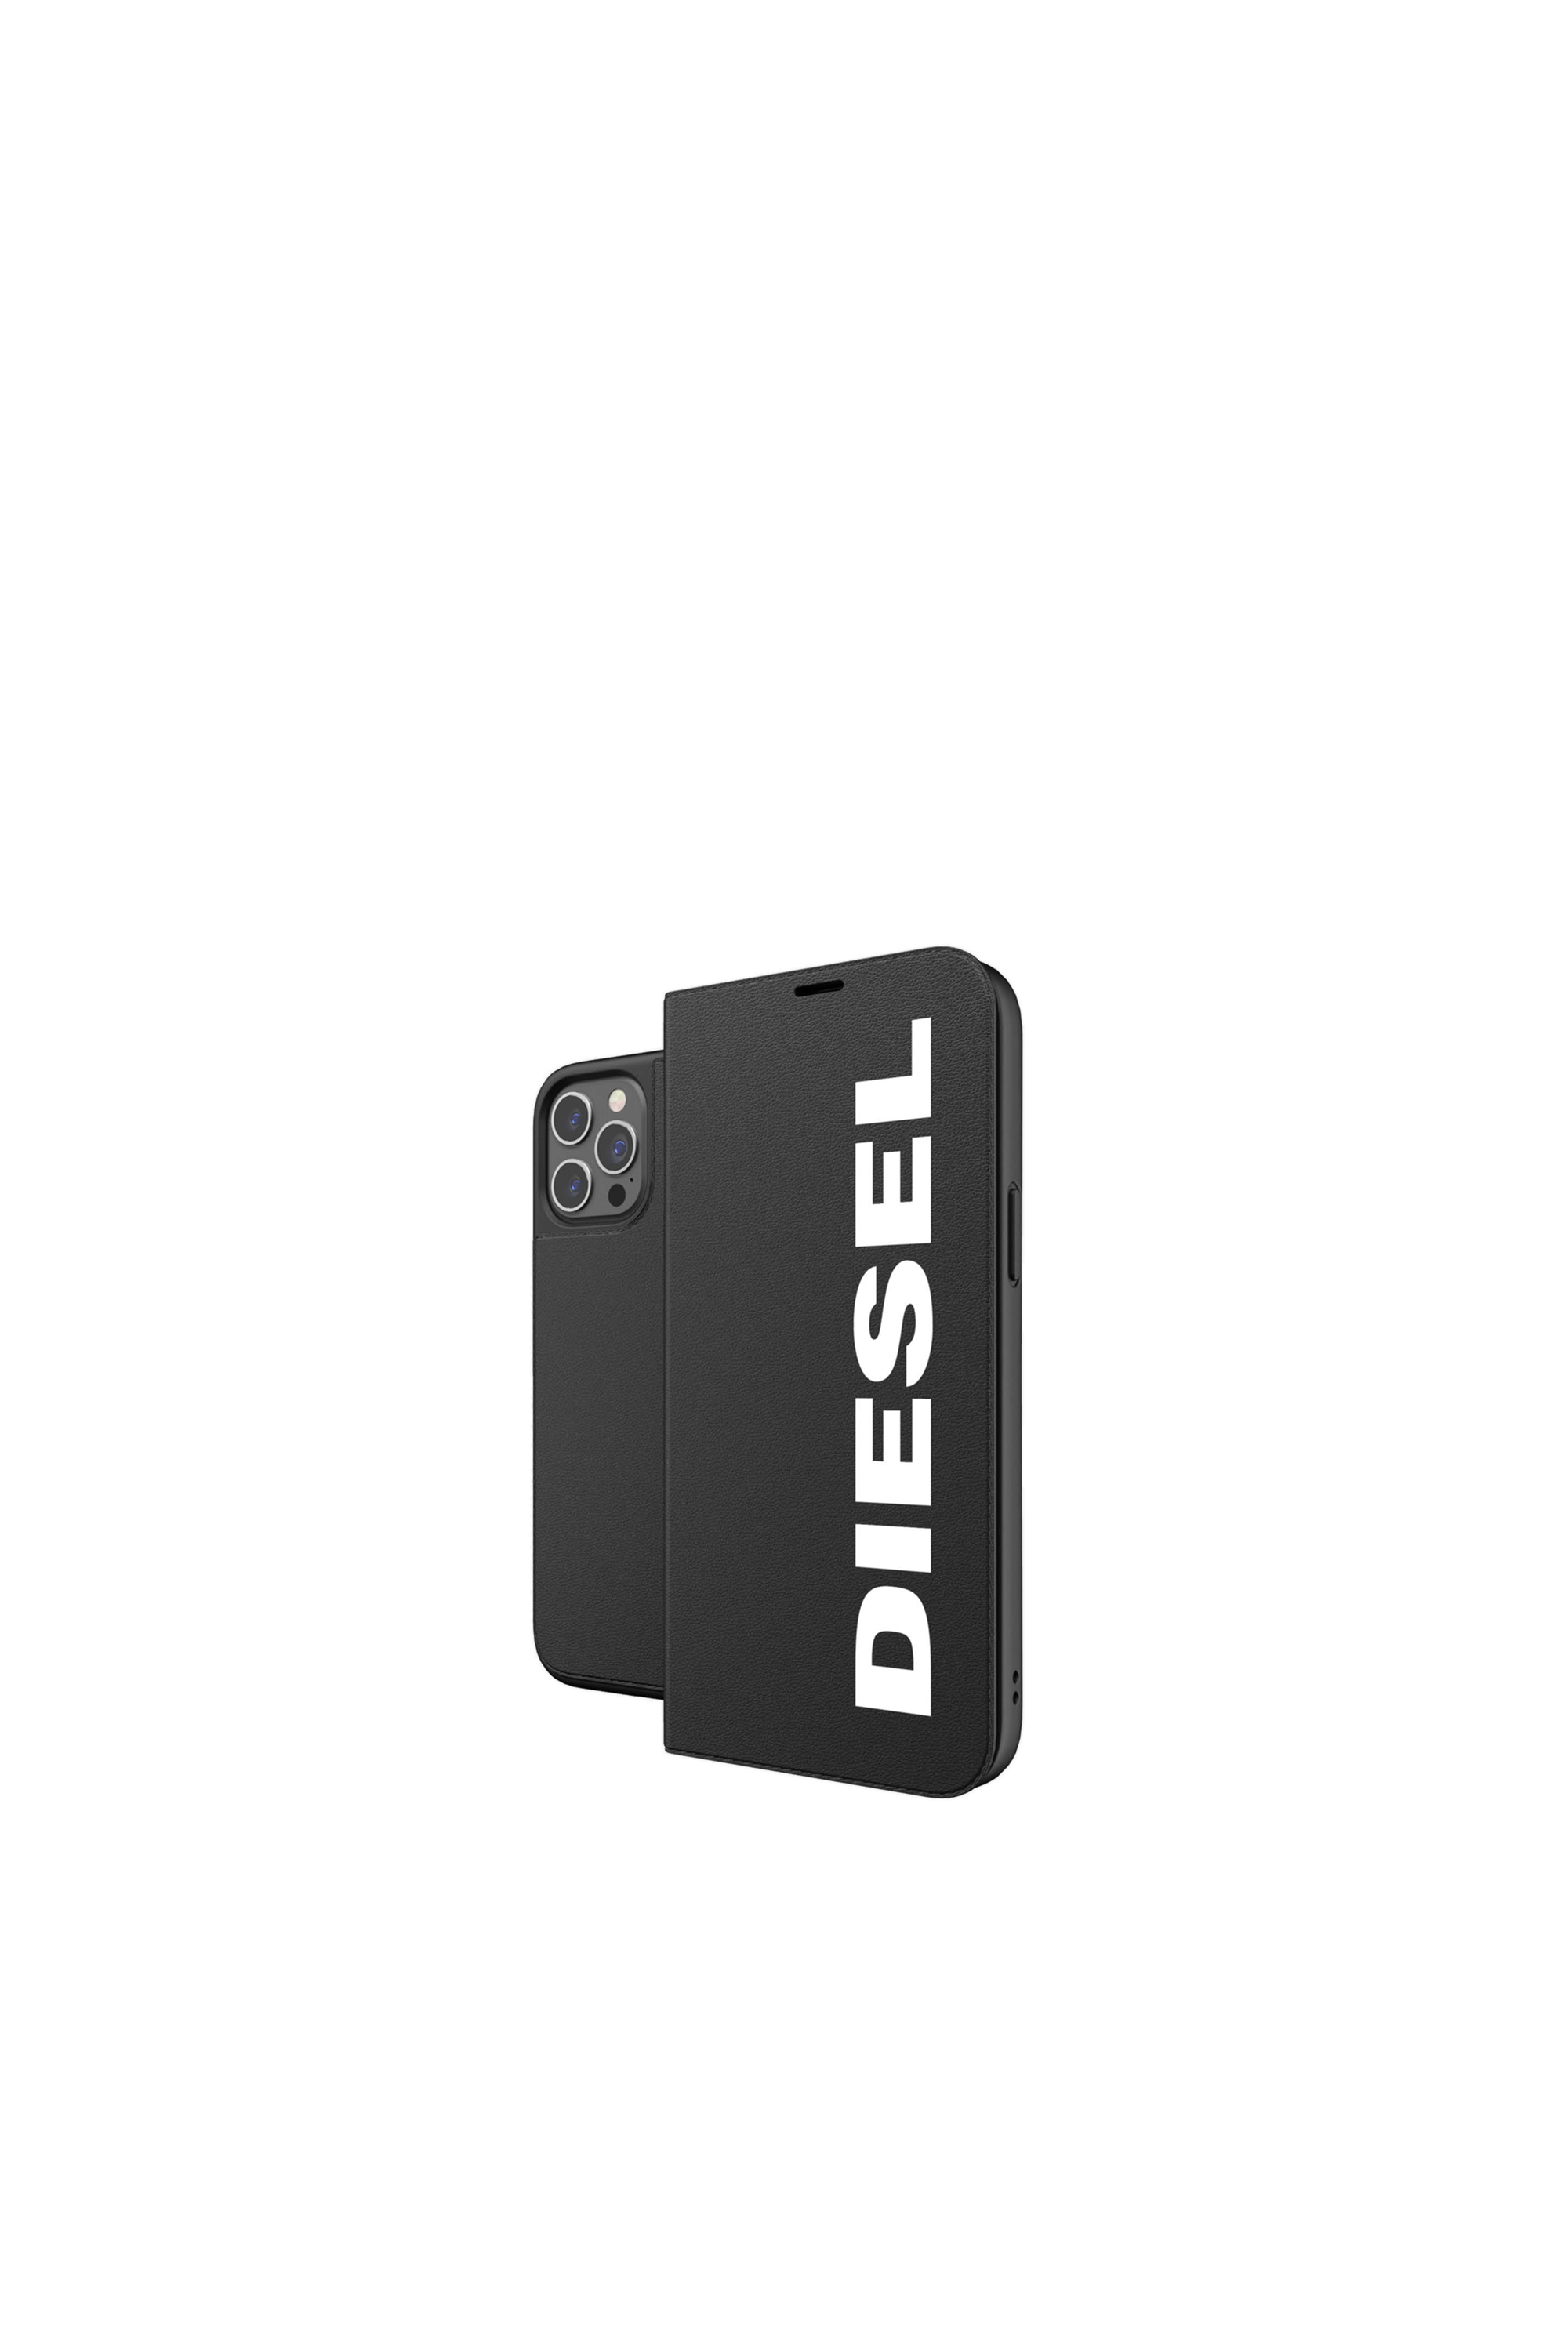 Diesel - 42486, Black - Image 1